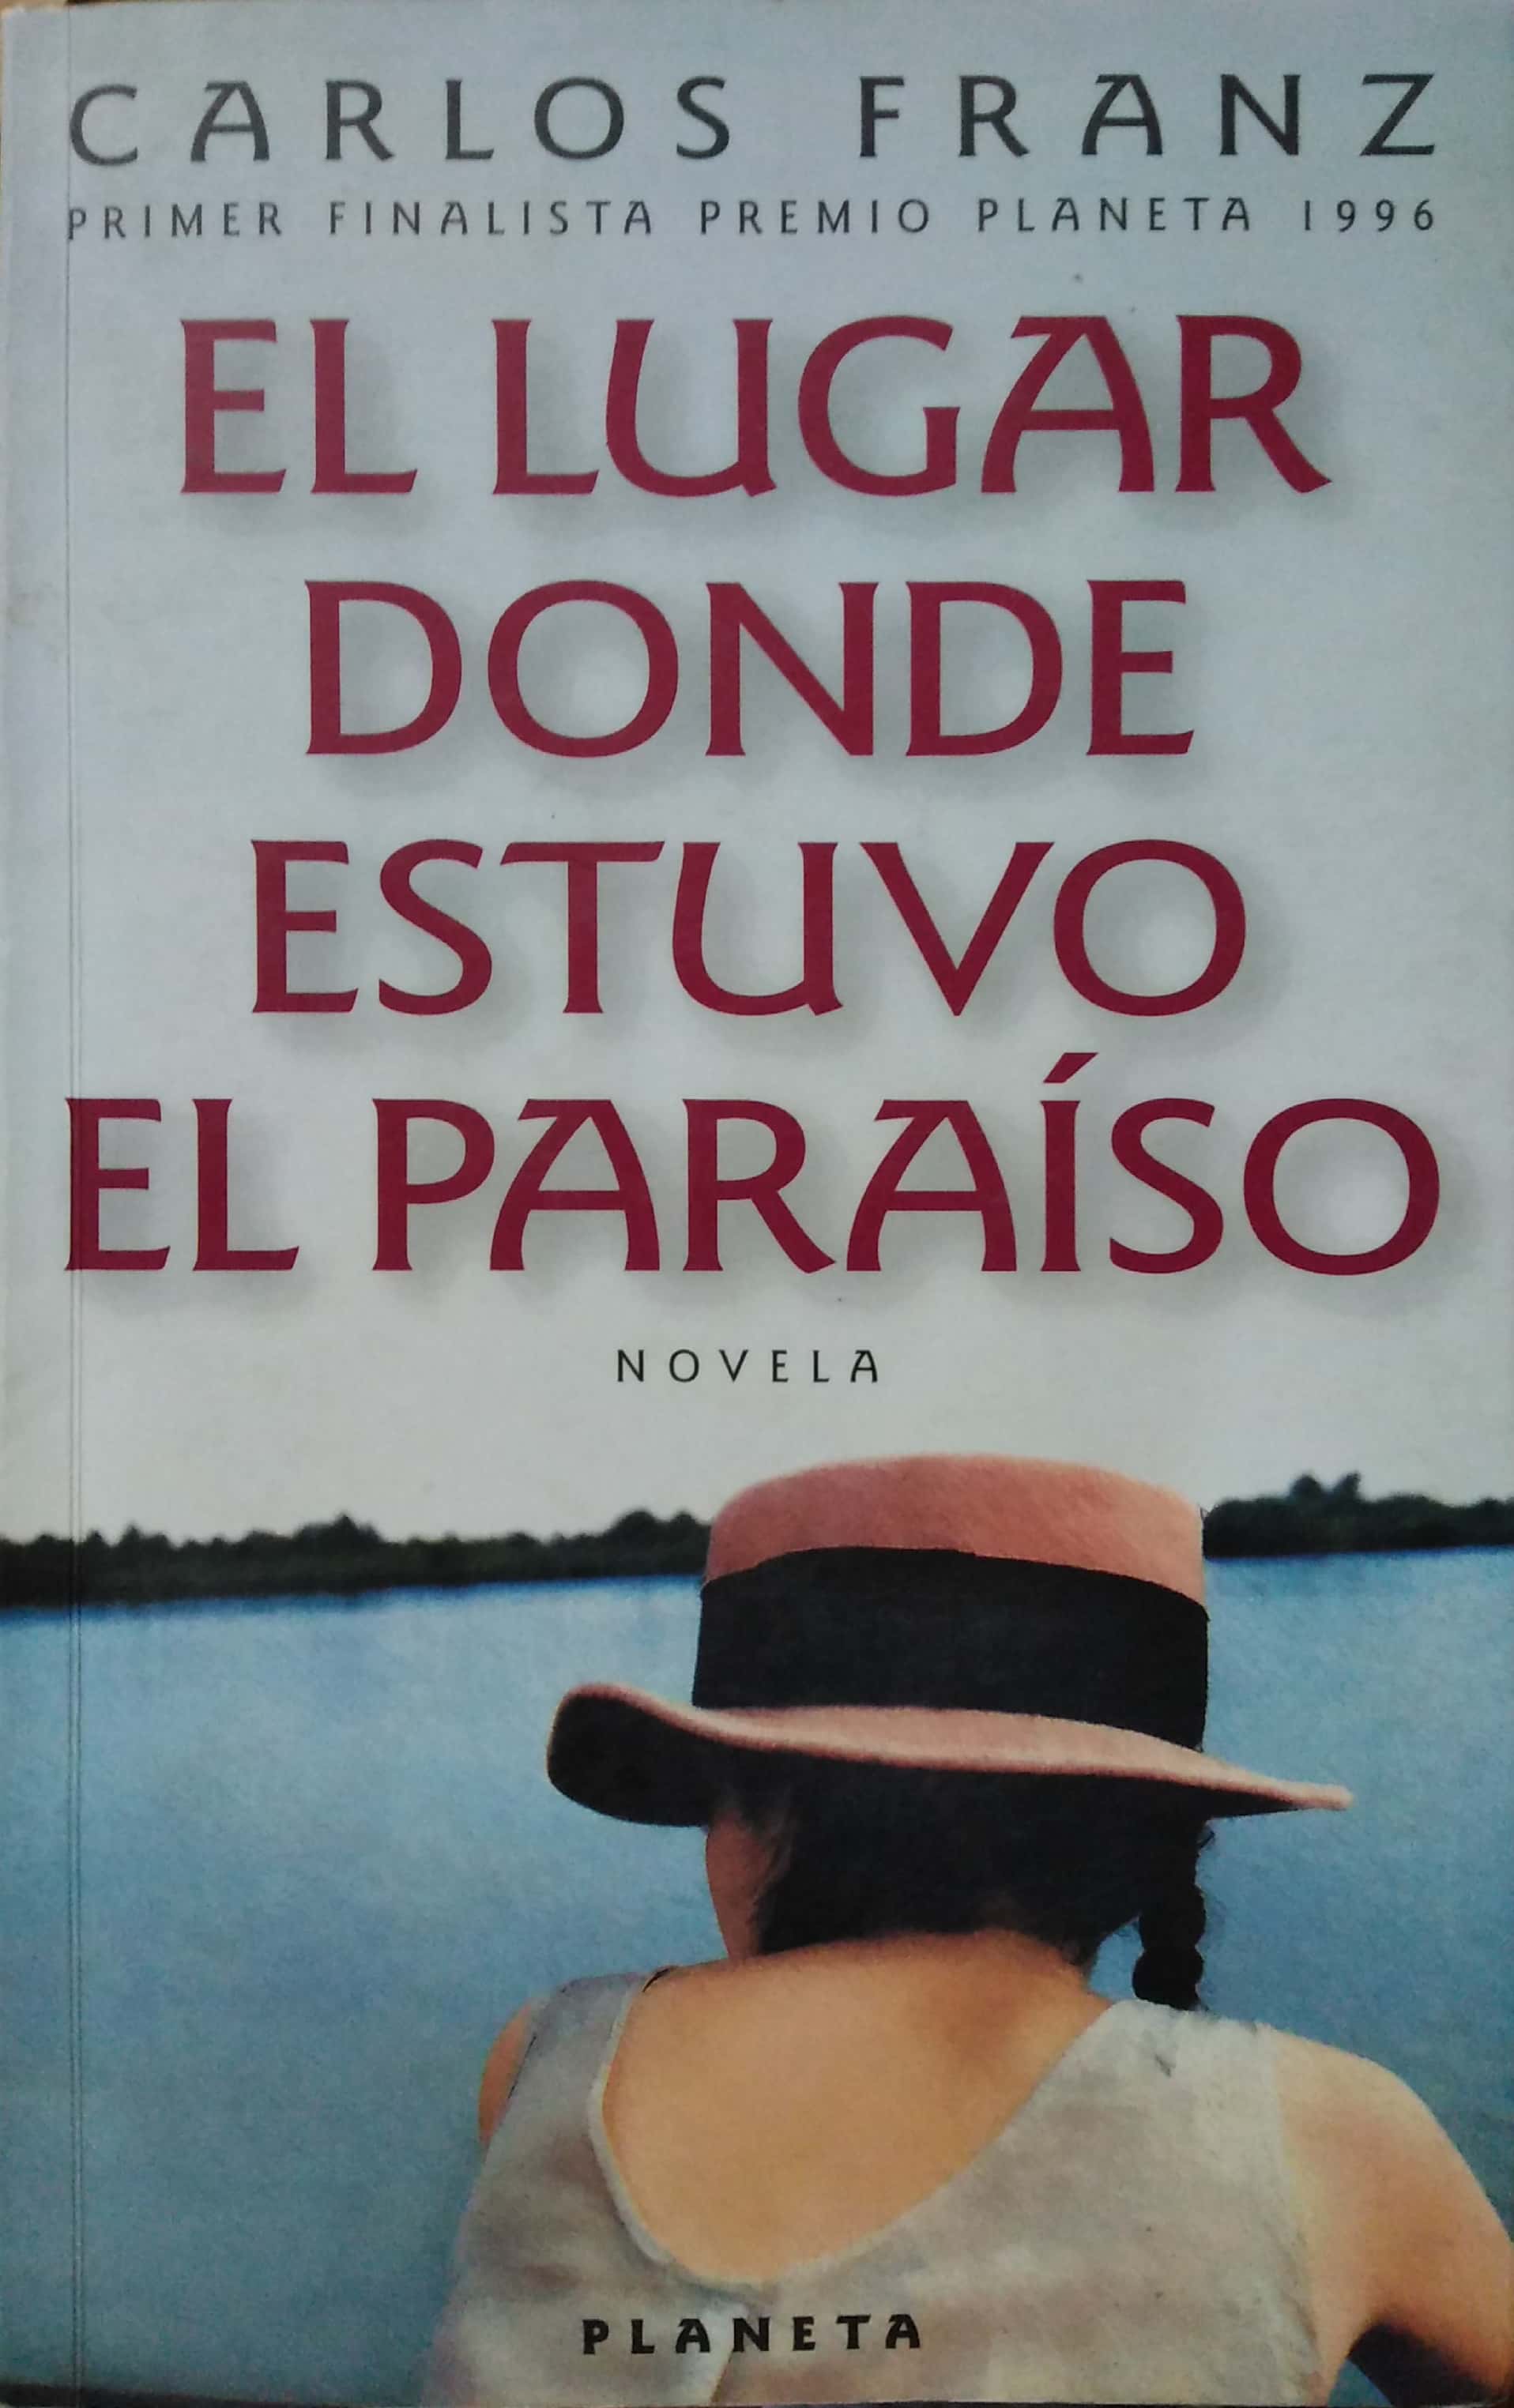 El Lugar Donde Estuvo El Paraiso (Spanish Edition) - Franz, Carlos